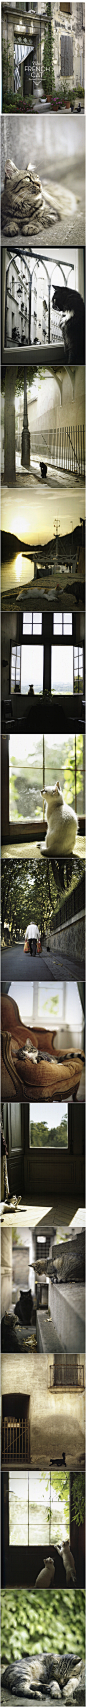 法国的女摄影师Rachael McKenna所拍摄的照片融汇而成的图册《The French Cat》。非常棒的一本关于法国小镇的猫咪生活的图册，每一张照片都静谧唯美，每一只猫咪都带着自身特有的优雅和神秘感却又不失俏皮，这本图册不仅仅只是向人们展示了猫咪的生活，同时也表现了法国小镇的浪漫景色，如诗如画。



